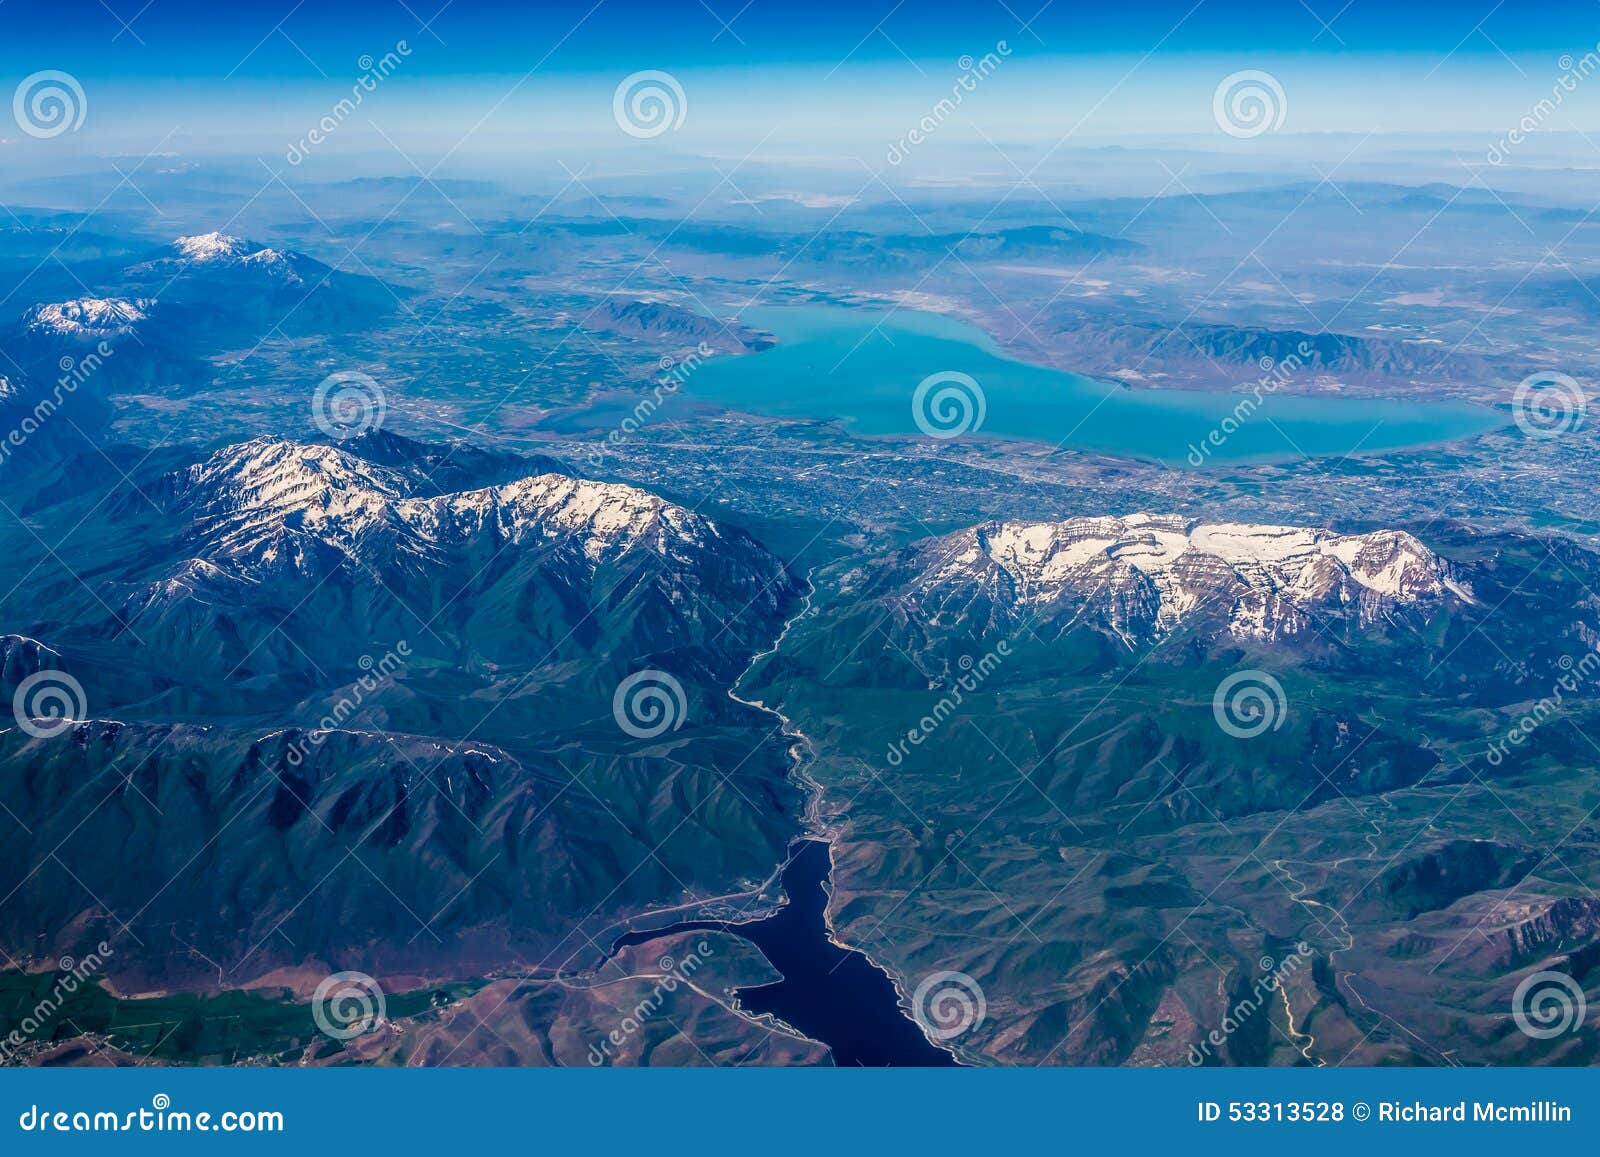 high altitude view of utah lake near provo, utah.